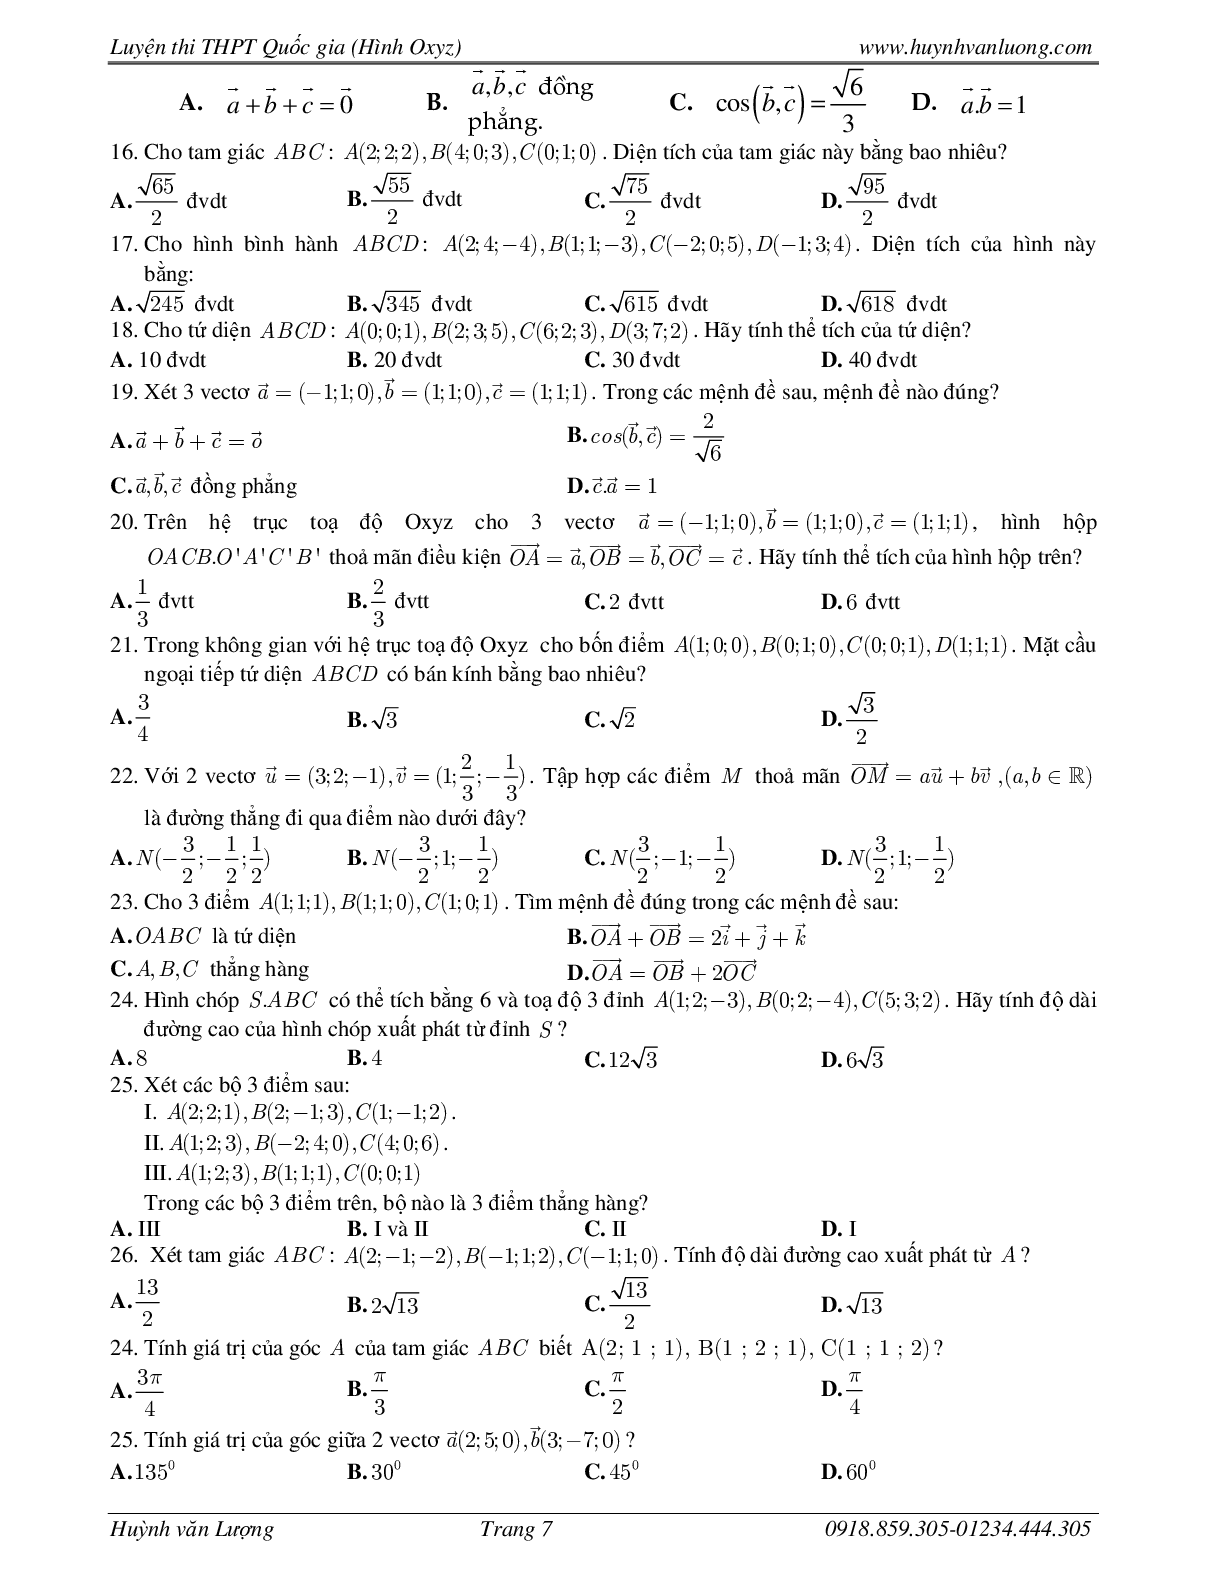 236 Bài tập trắc nghiệm hình học Oxyz môn Toán lớp 12 năm 2023 (trang 7)